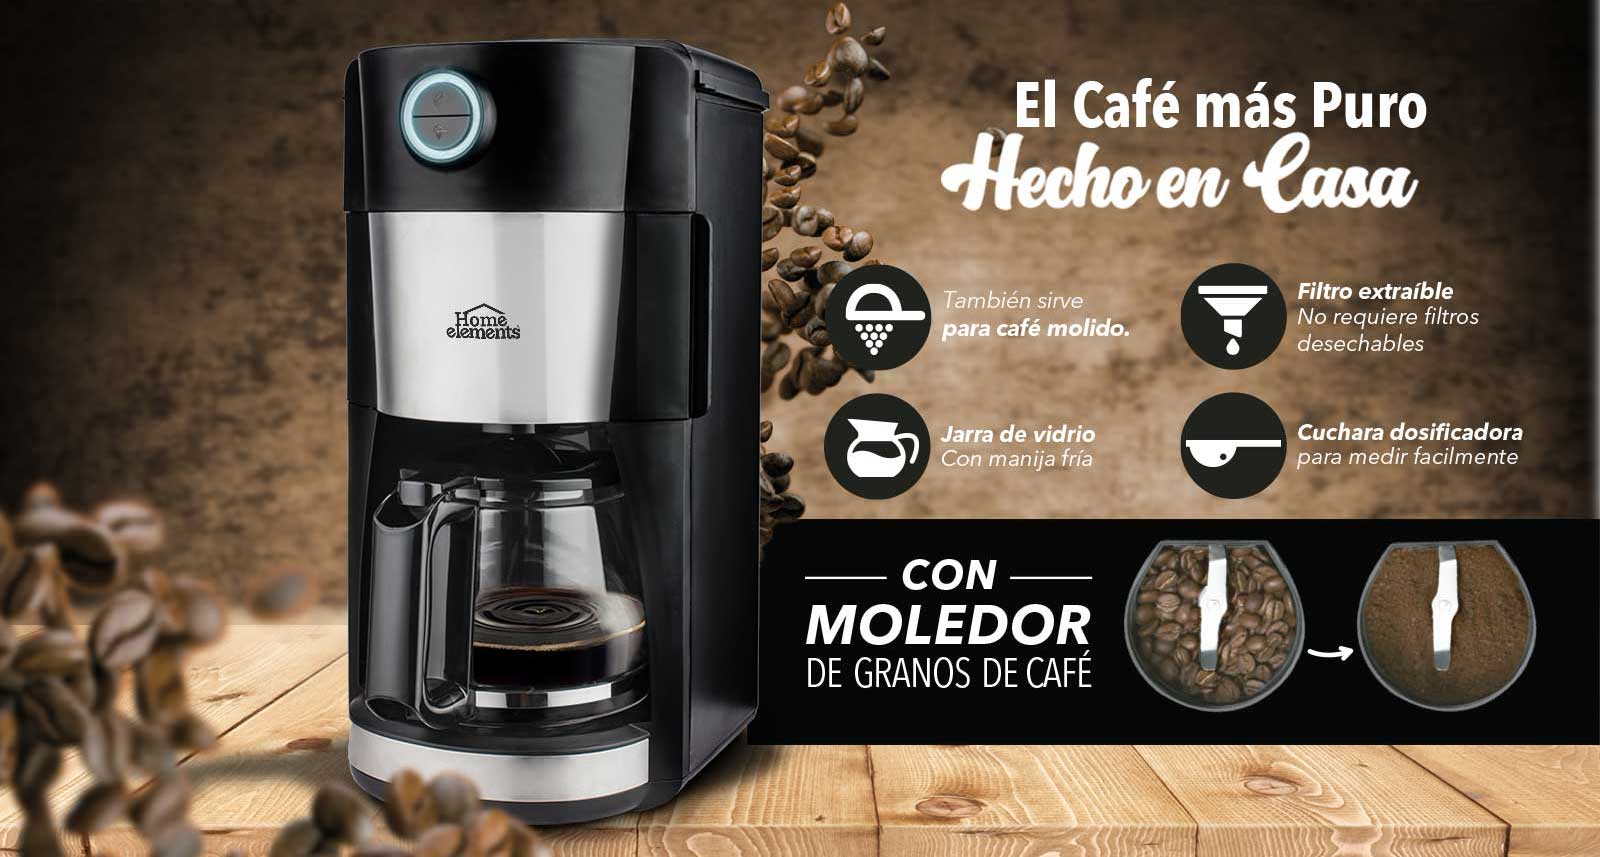 HE-6359 Cafetera Eléctrica con MOLEDOR de Café HOME ELEMENTS 12 Tazas  Negra-Acero Inox. Jarra de Vidrio - ÁBACO PyS - Filtro Purificador de Agua  (Quindío - Colombia)